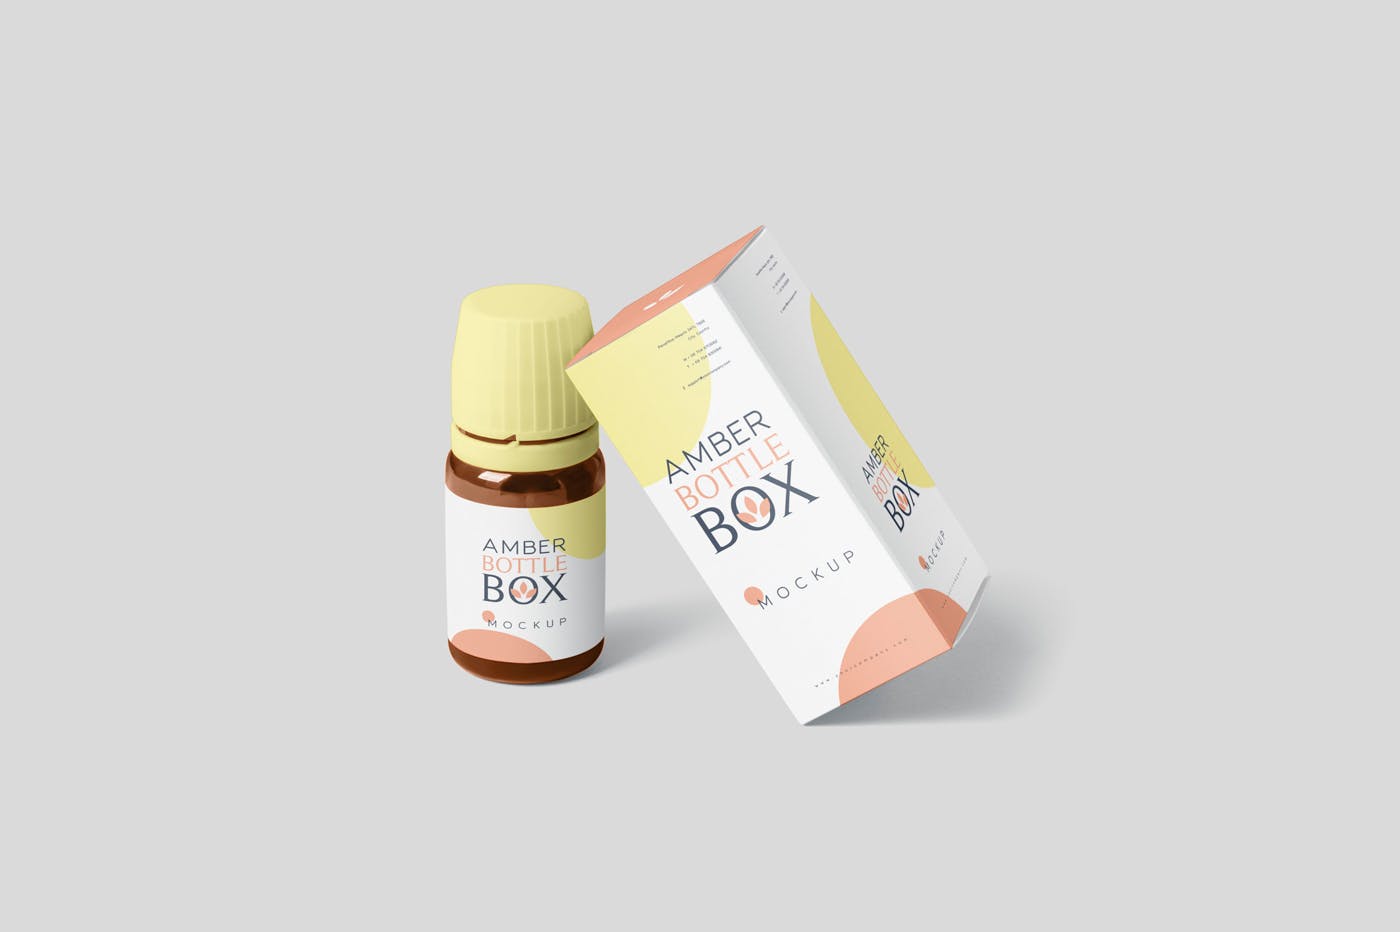 药物瓶&包装纸盒设计图素材中国精选模板 Amber Bottle Box Mockup Set插图(4)